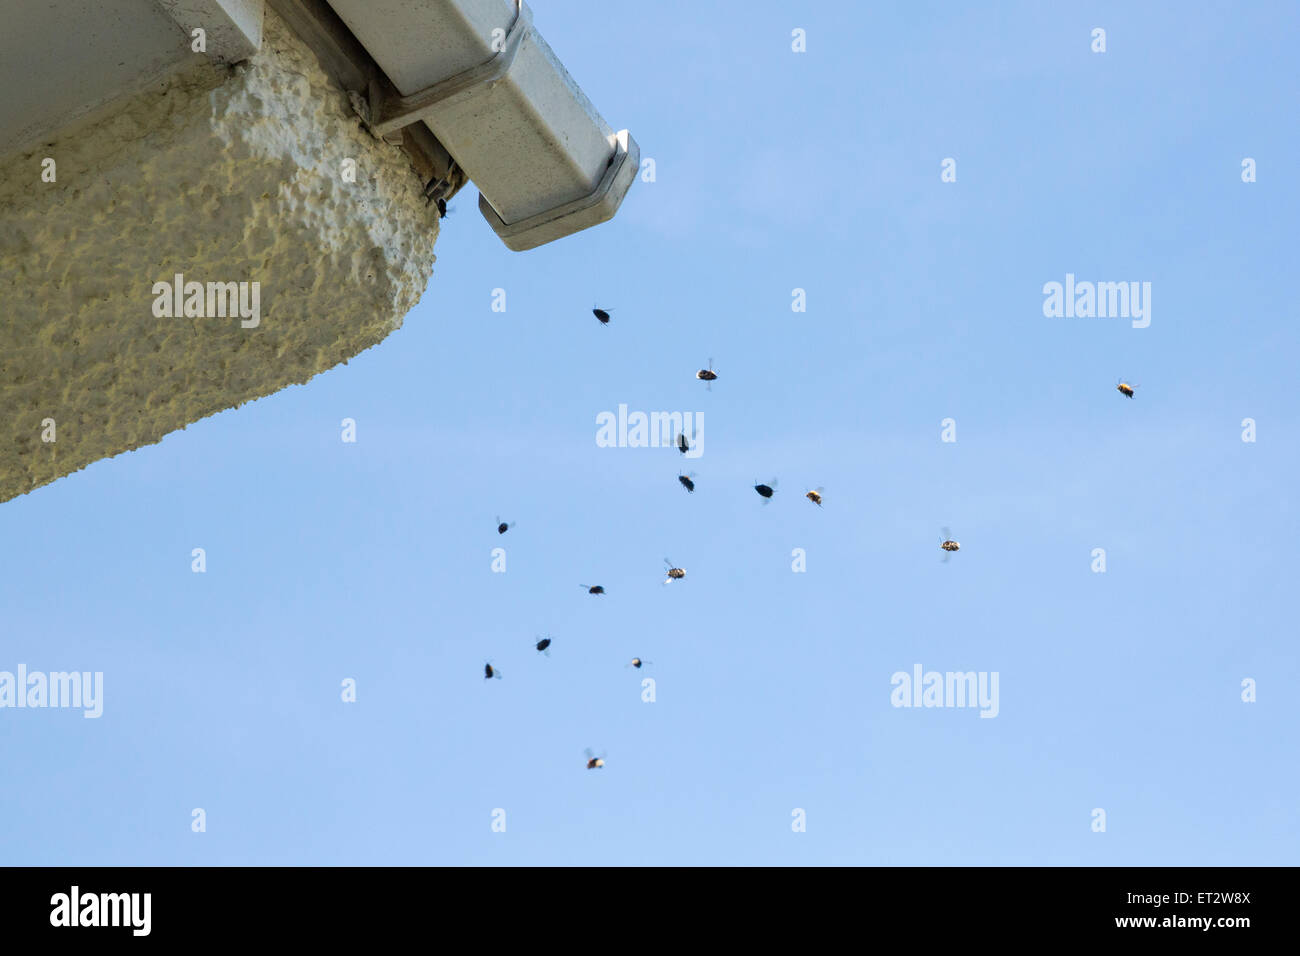 Arbre généalogique de bourdon les bourdons (Bombus hypnorum) fly autour de l'entrée de leur nid qui se trouve derrière des gouttières Banque D'Images